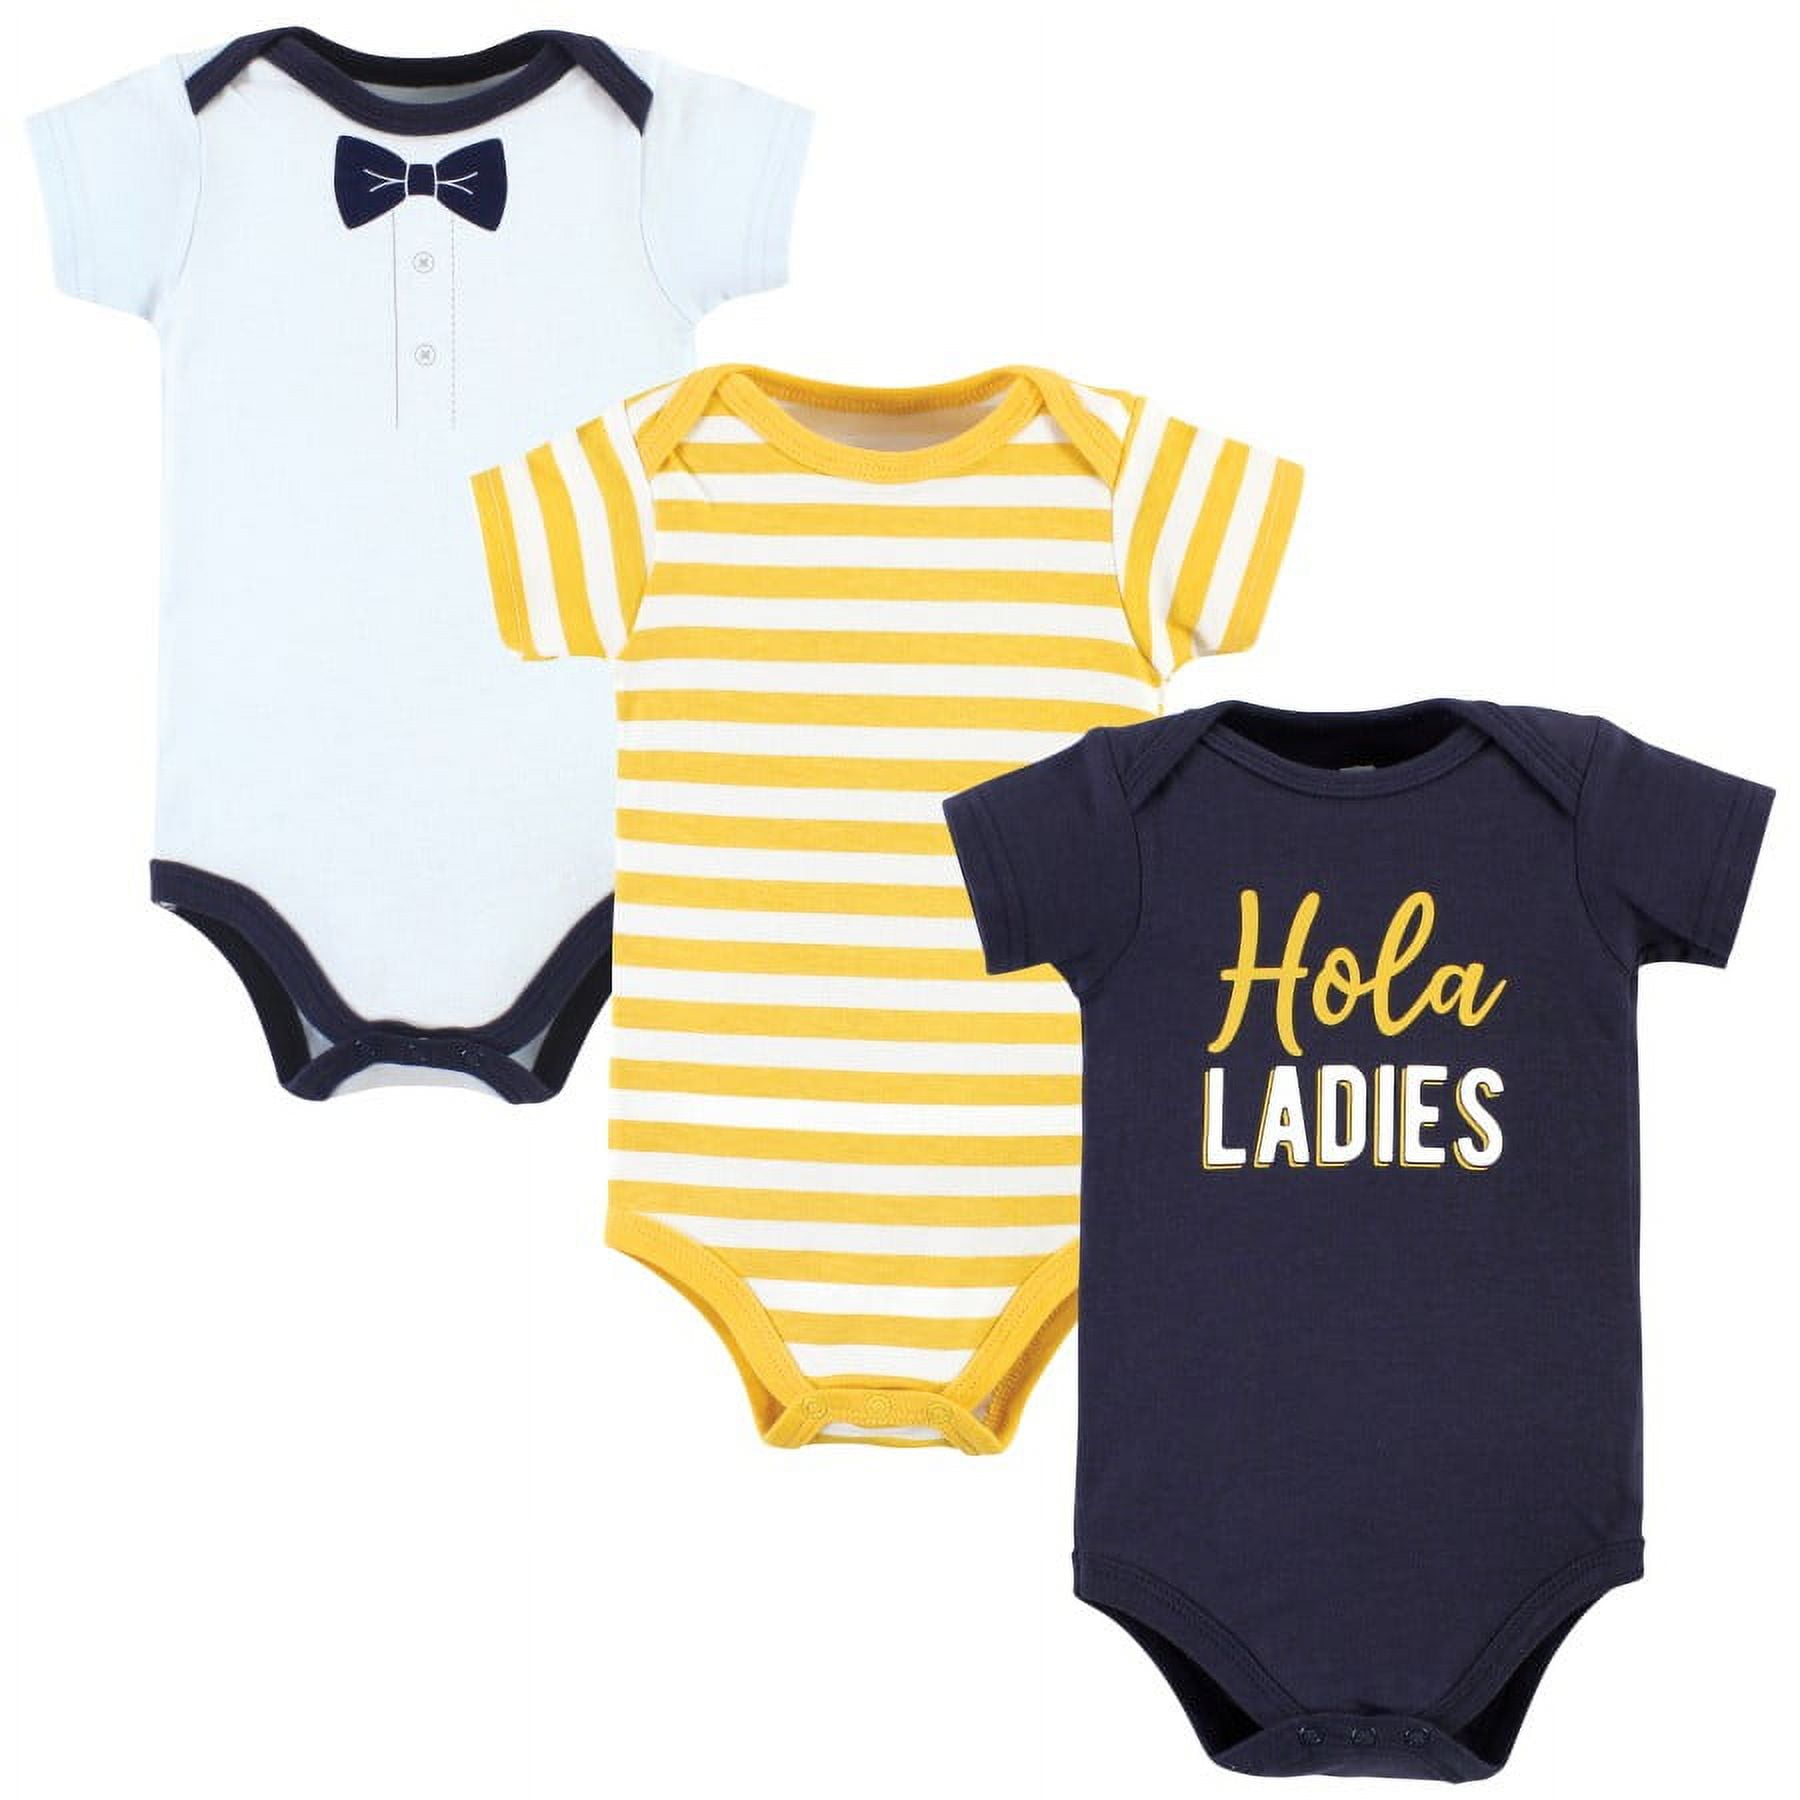 Hudson Baby Infant Boy Cotton Bodysuits 3pk, Burgundy Ladies I Have  Arrived, 6-9 Months : Target